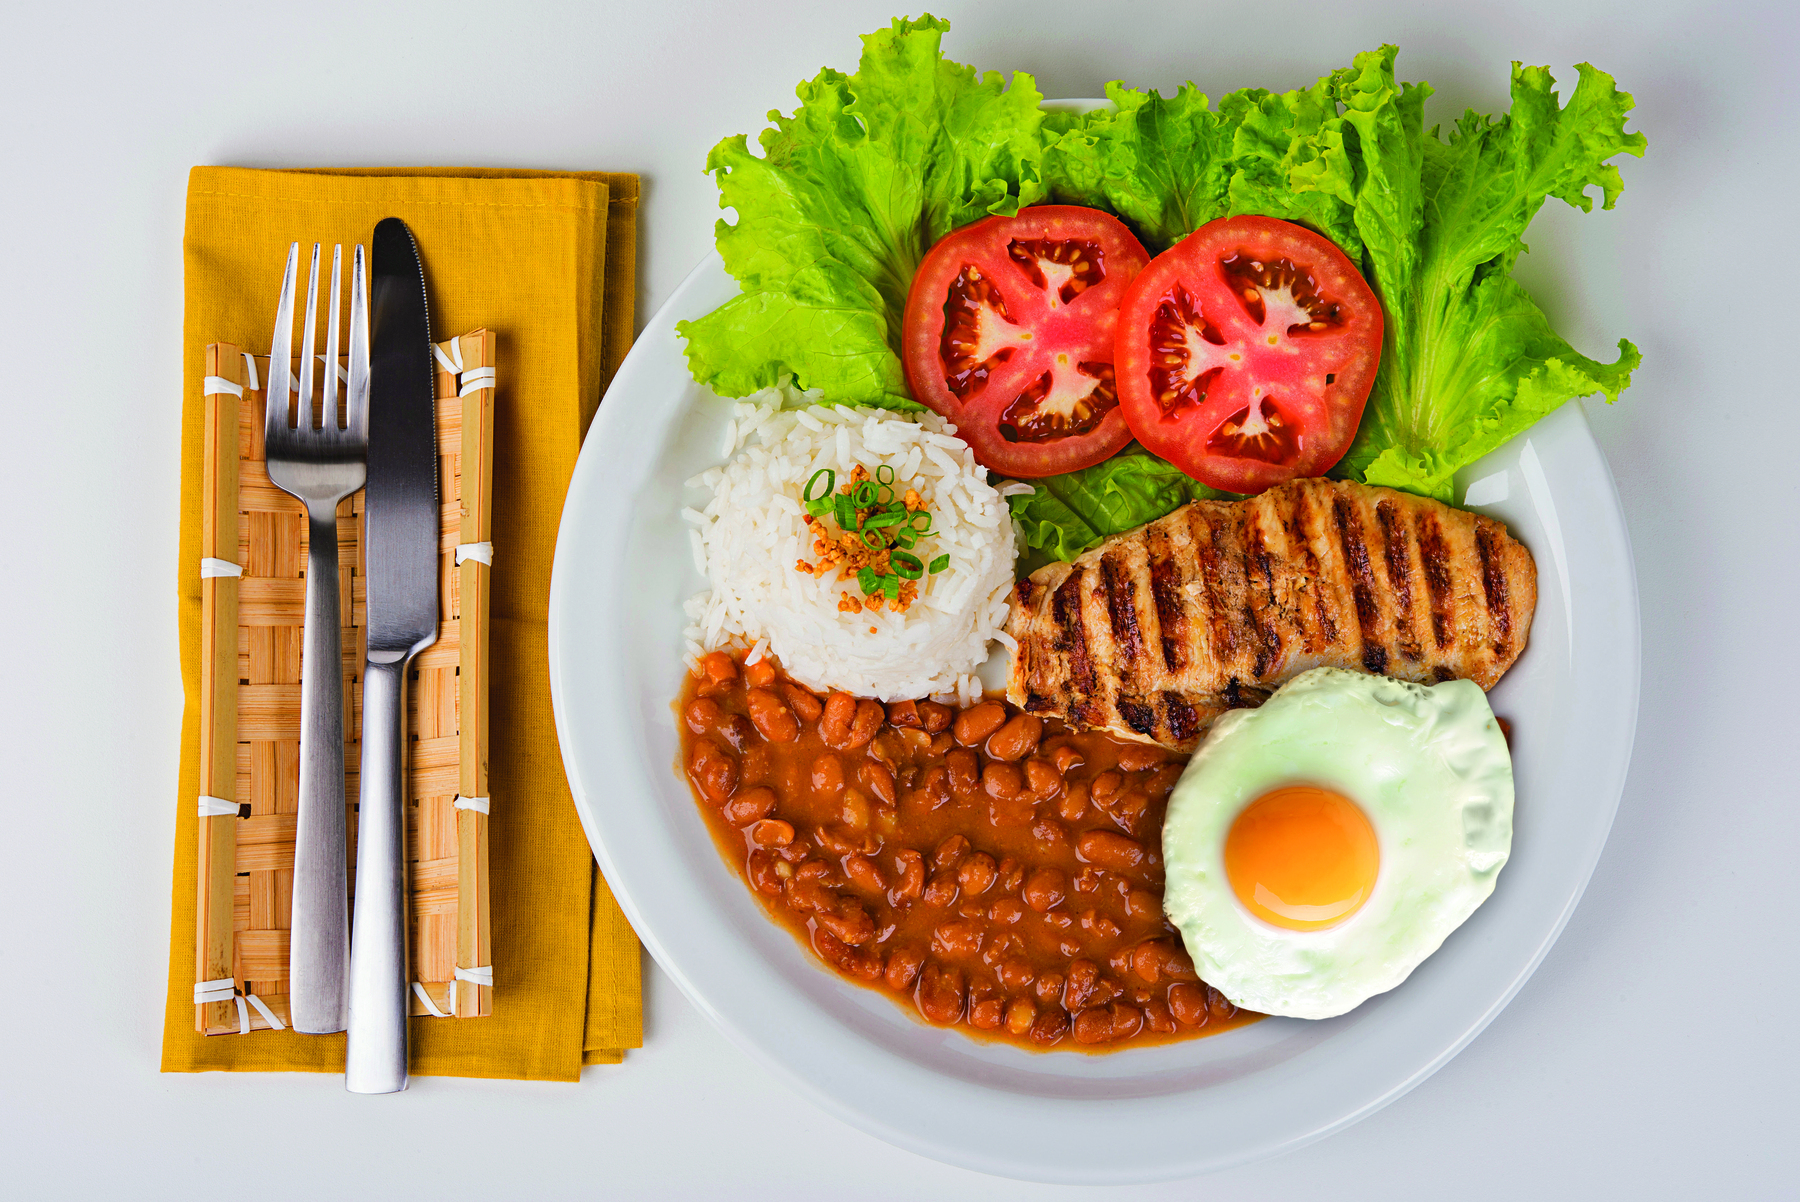 Fotografia. Um prato branco com arroz, feijão, filé de frango, ovo frito e salada de alface com tomate.